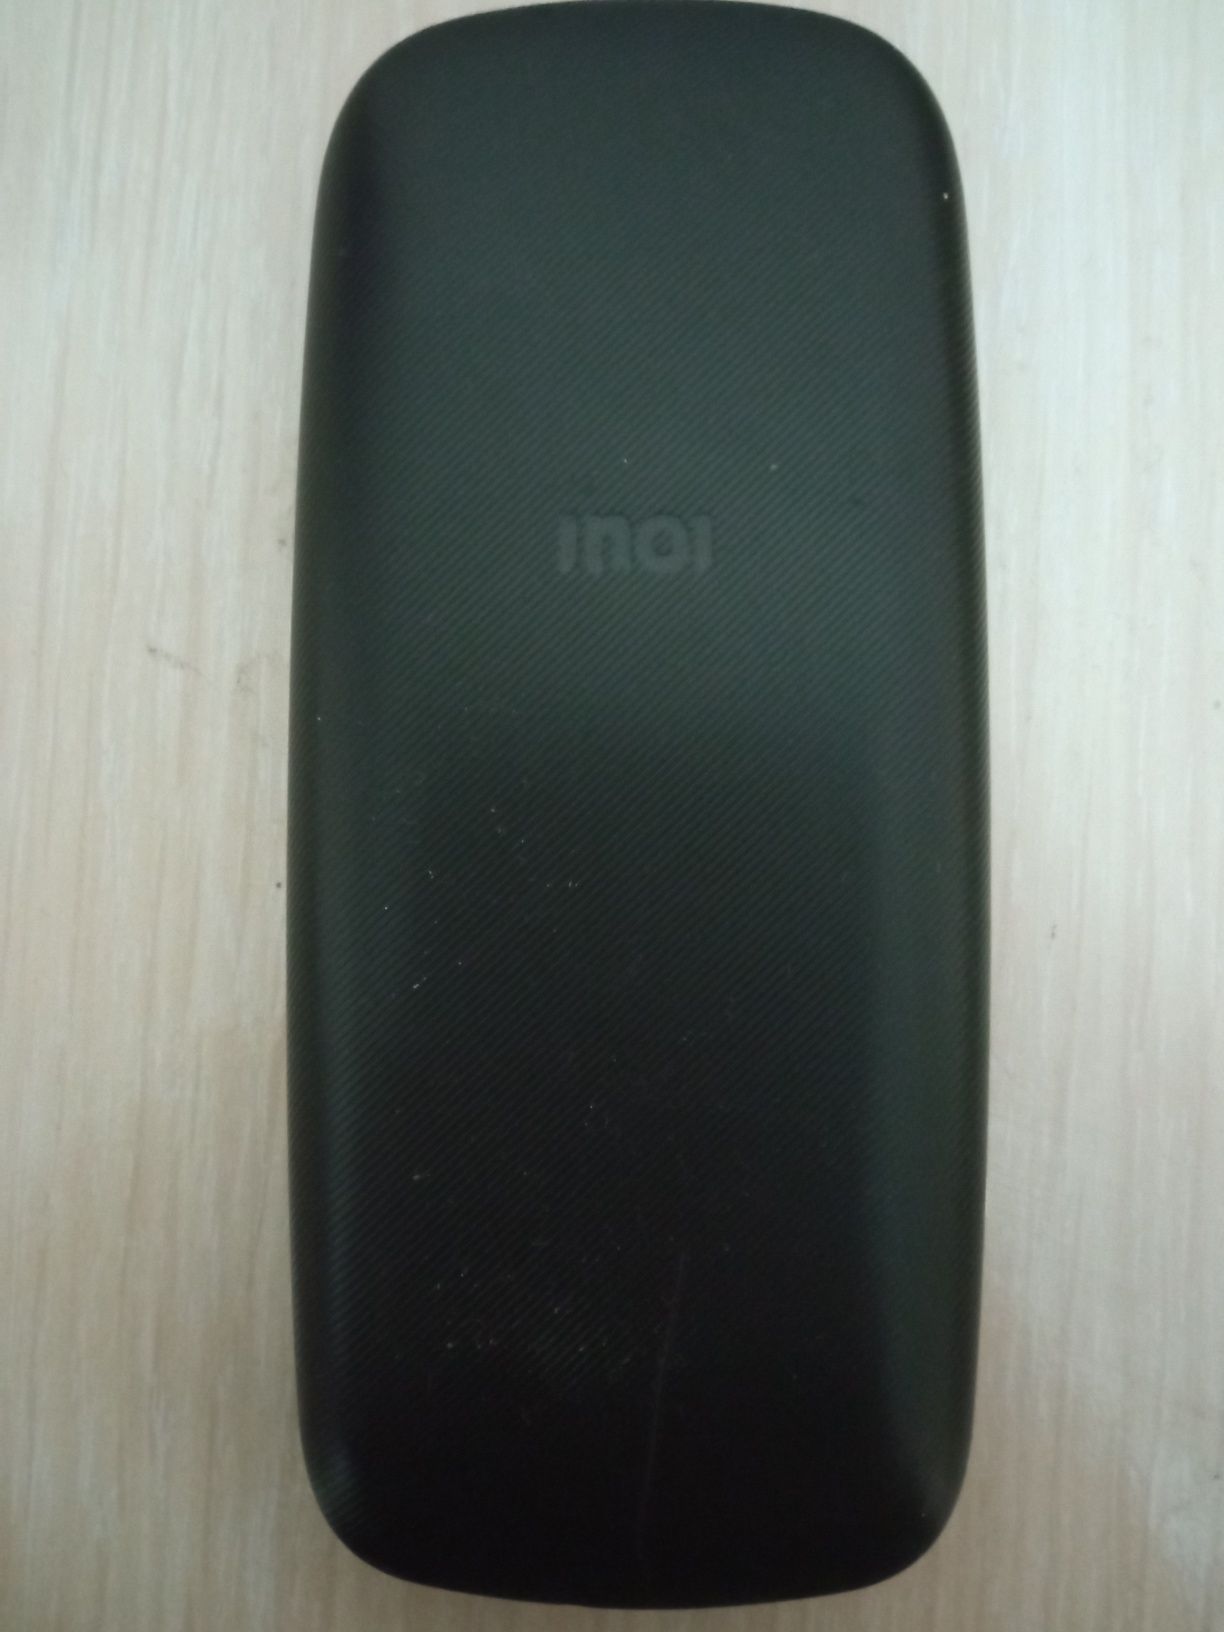 Кнопочный телефон Inoi 100